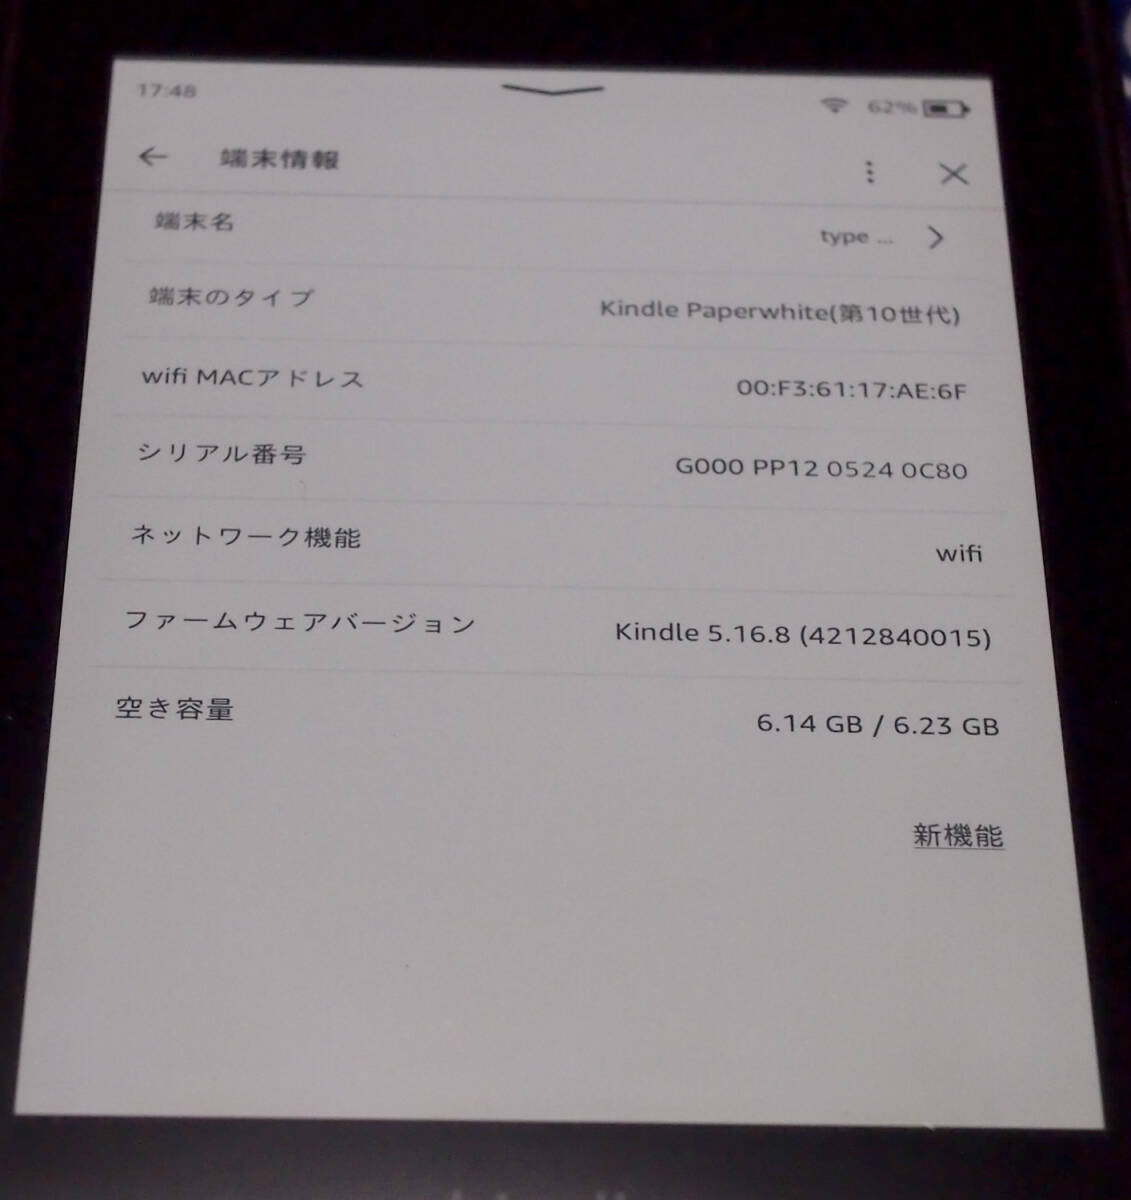 Kindle Paperwhite функция защиты от влаги установка no. 10 поколение модель wifi 8GB черный реклама нет модель б/у товар с футляром 